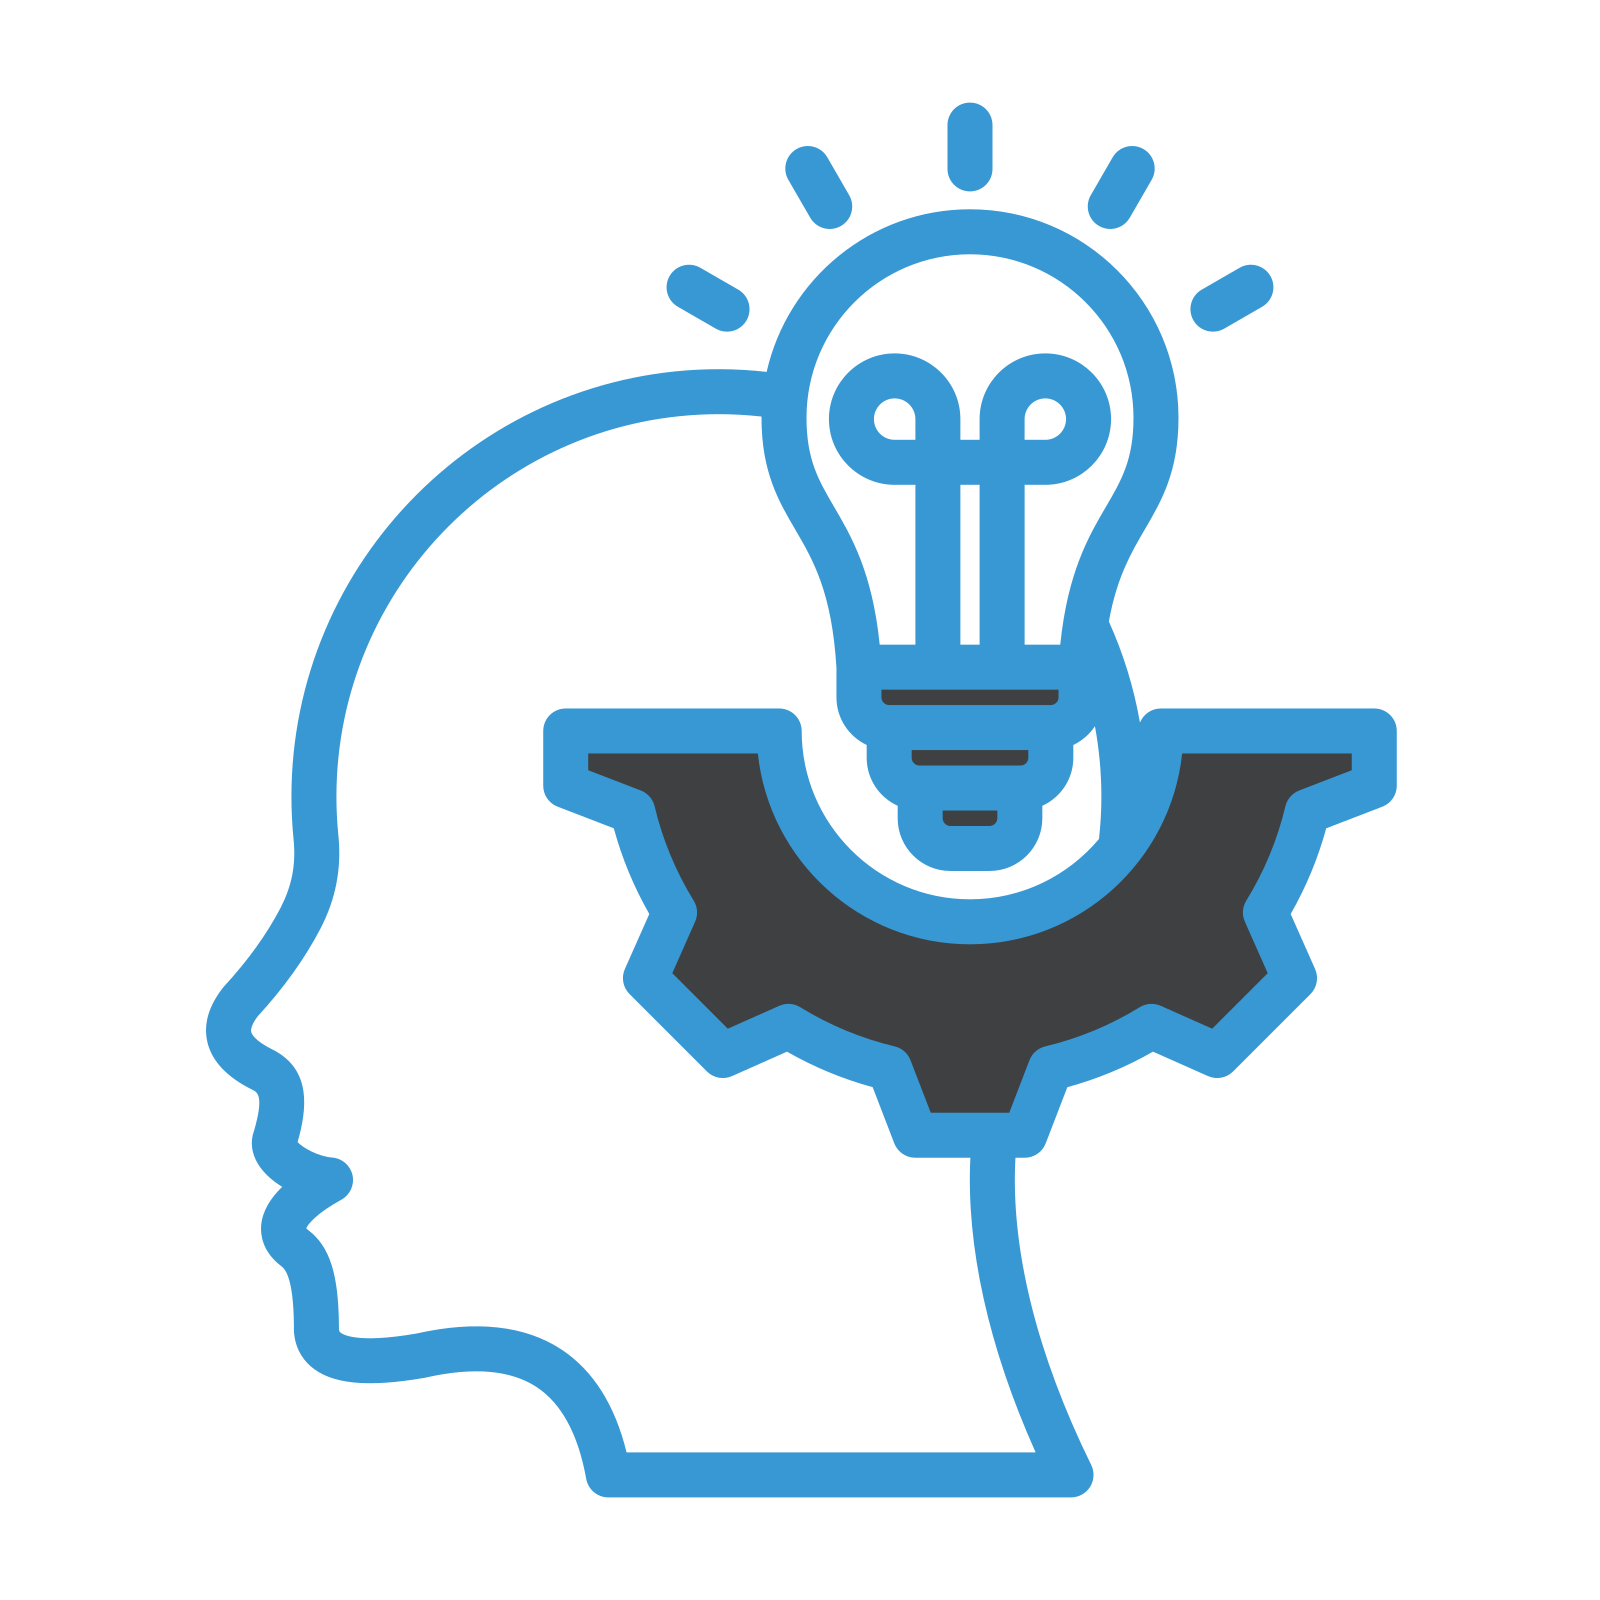 icône représentant une personne en train de réfléchir, son cerveau étant à moitié une ampoule et un écrou. Cela représente l'innovation et la qualification.